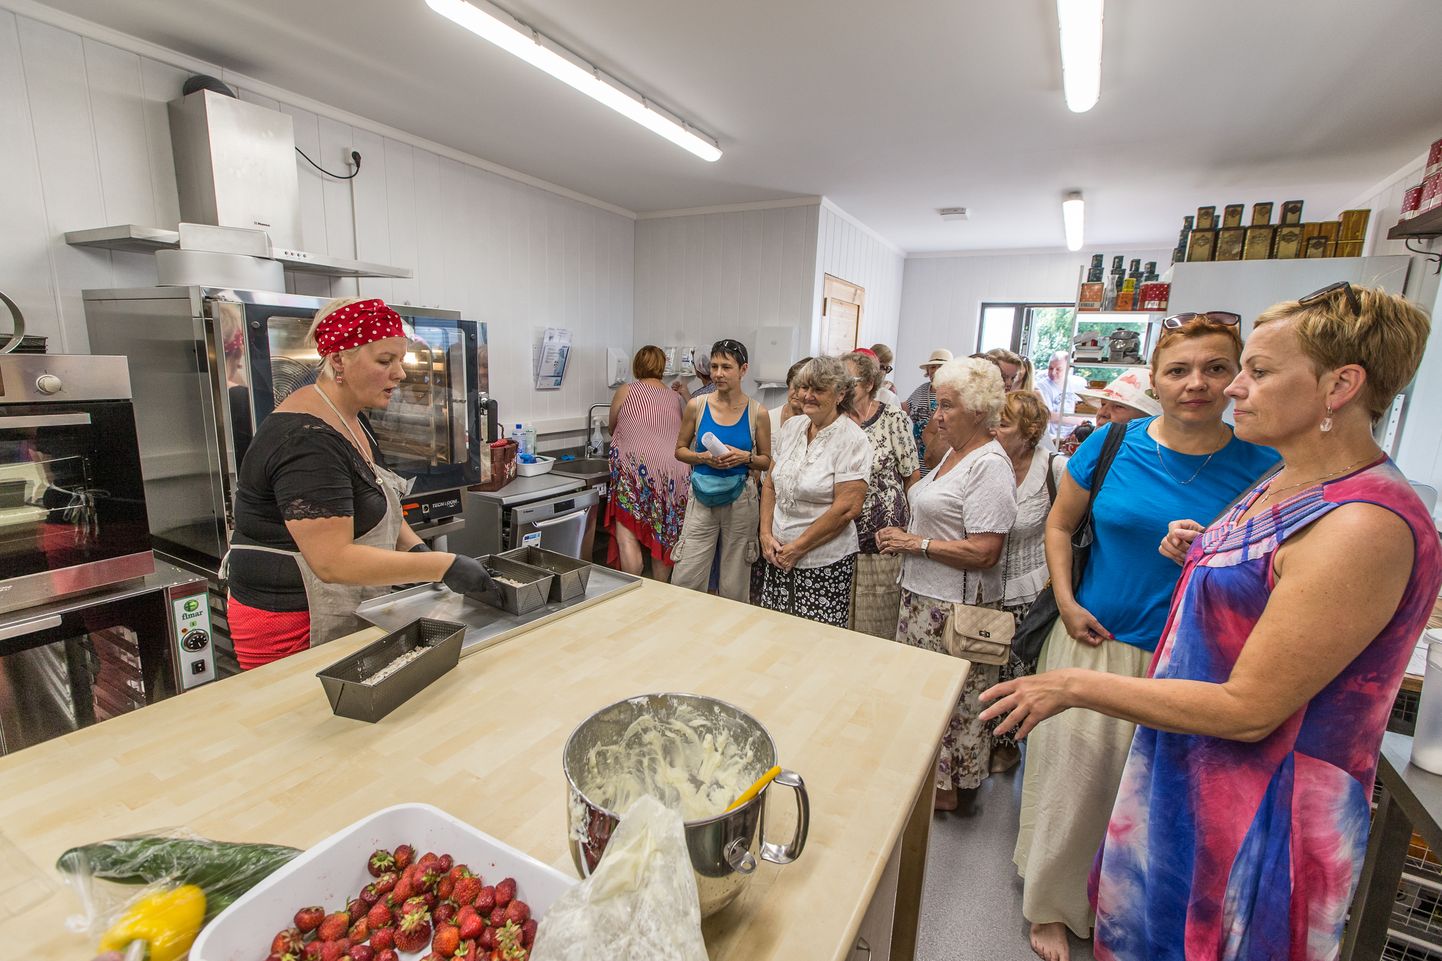 OÜ Pagarikoda omanik Leelo Strauch võõrustab külalisi nii Viru Toidu kohvikute päeval kui ka avatud talude päeval. Selles Sonda väikeettevõttes valmistatakse tooteid soolasest magusani ja hinnatakse kohalikku toorainet. Külastajad saavad piiluda ka tootmisruumi.